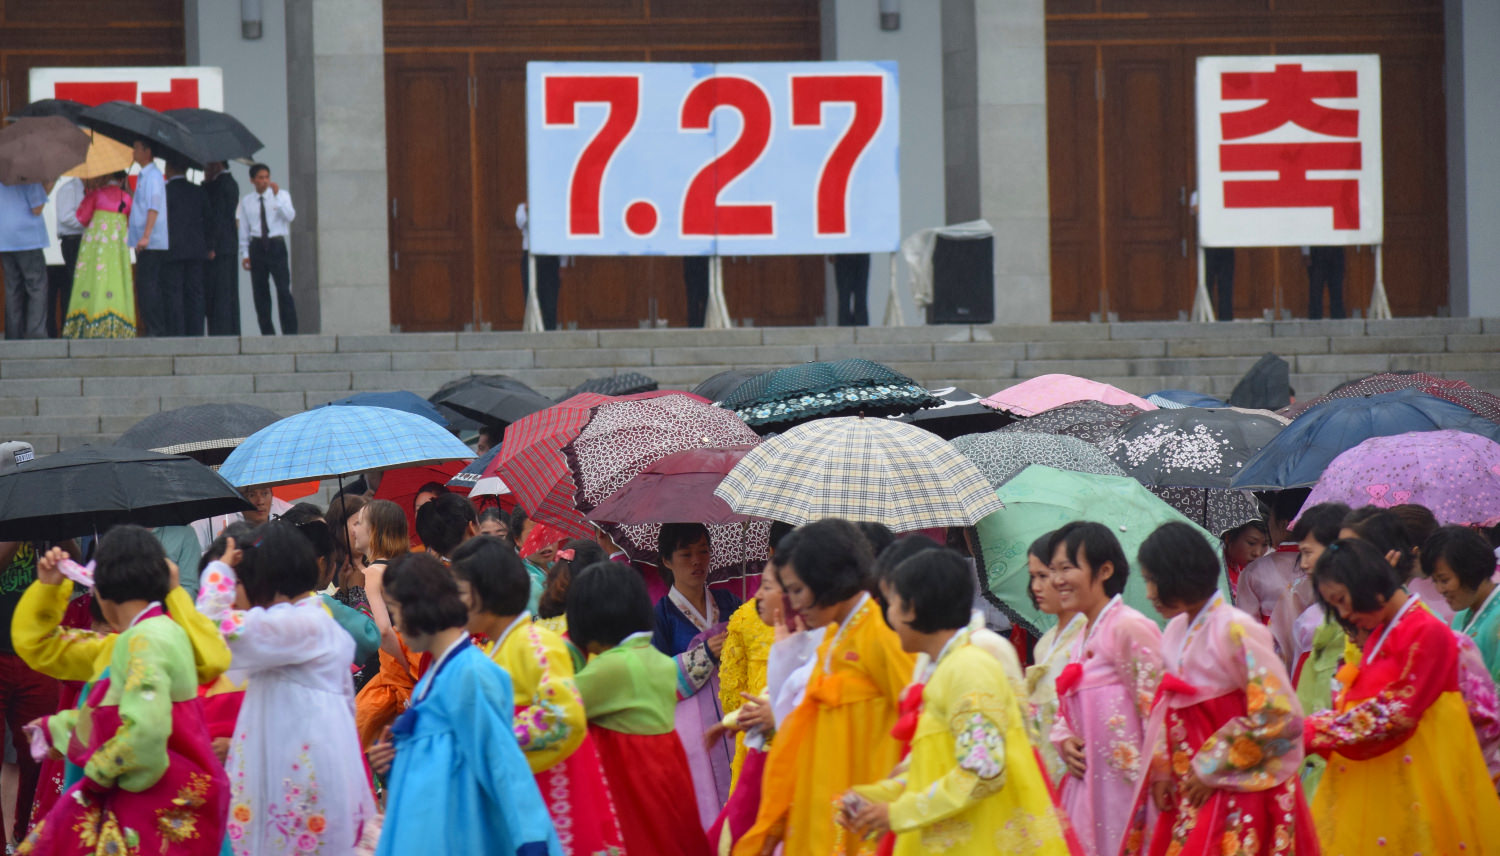 Danses de masse célébrant le jour de la victoire en Corée du Nord (RPDC). Voyage organisé par KTG Tours